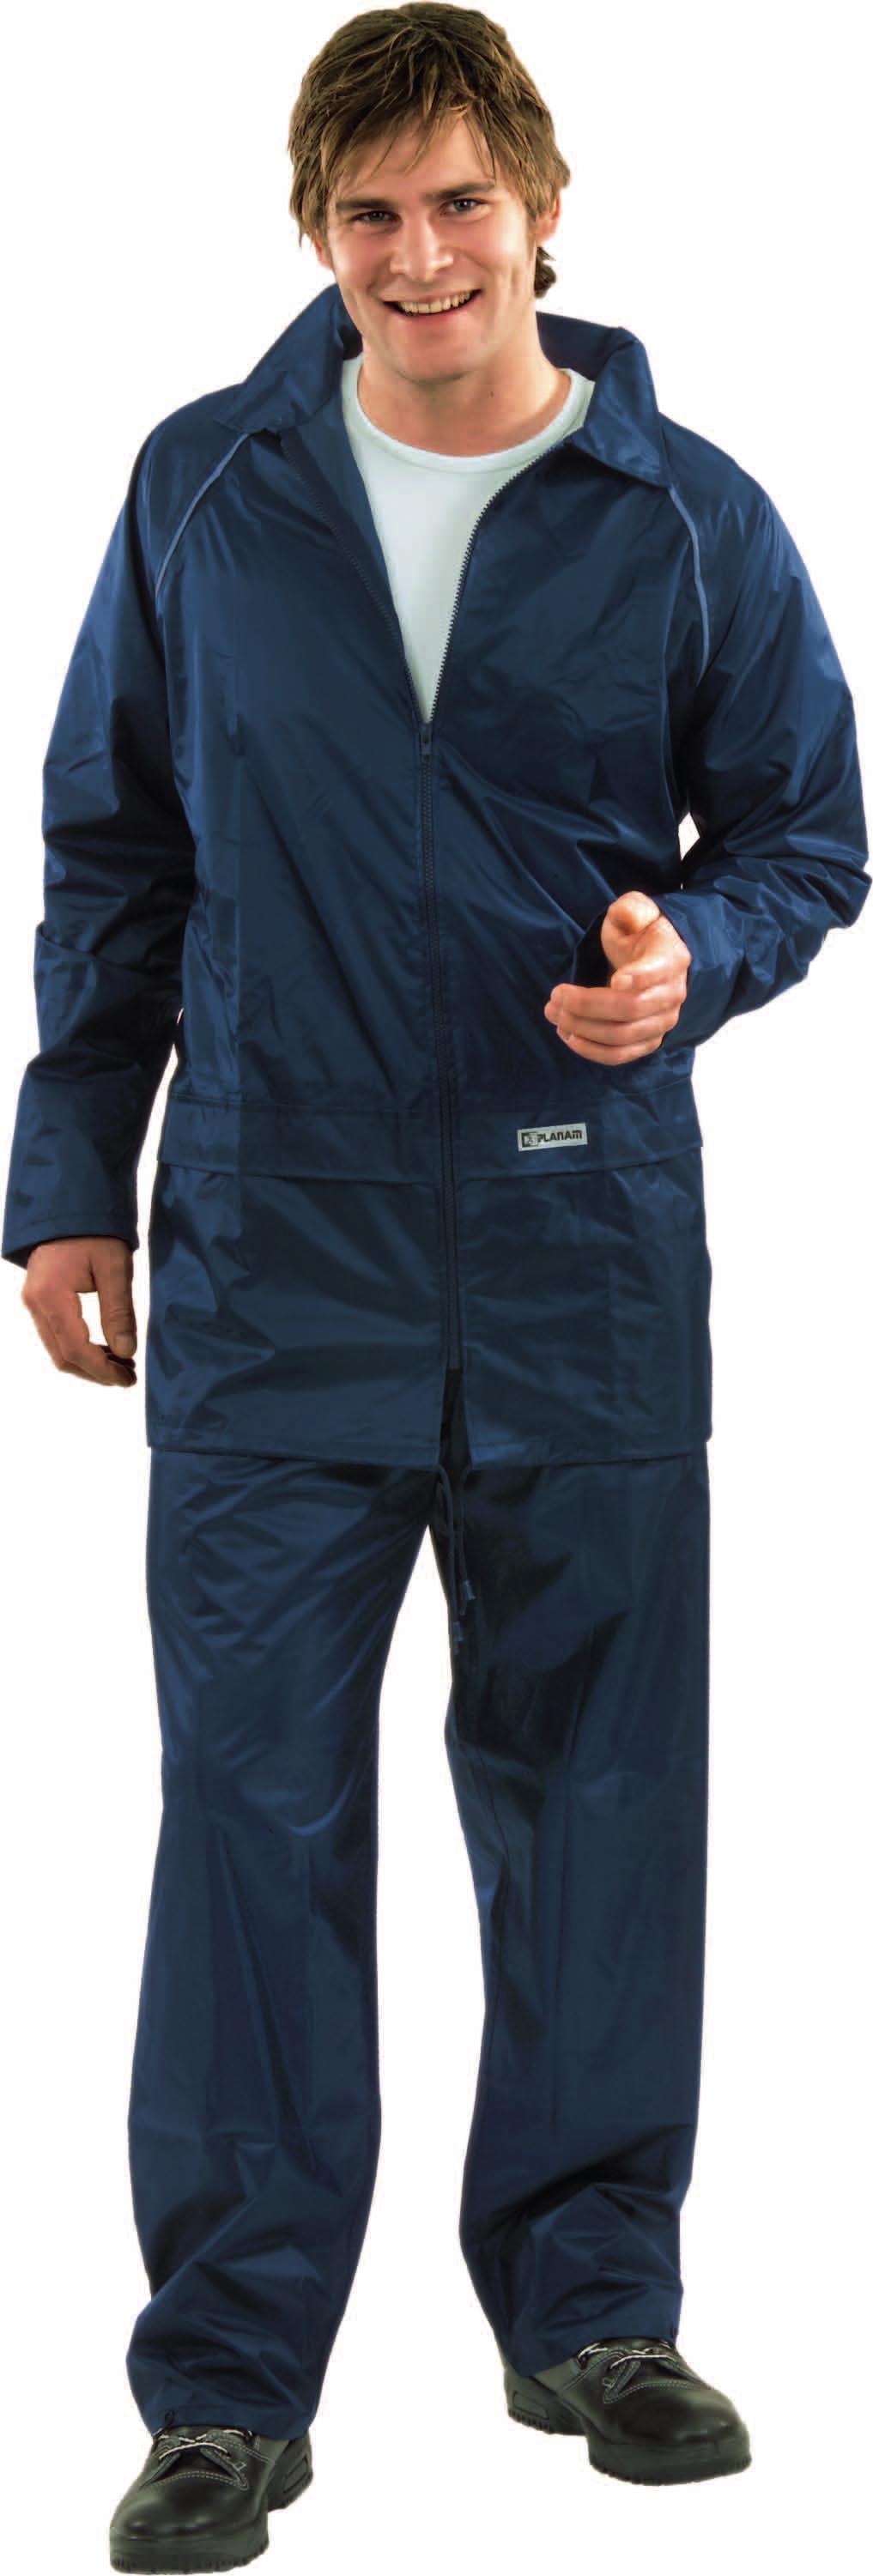 Consta de chaqueta y pantalón, envueltos en una práctica bolsa. Transpirable, con recubrimiento de PVC, costuras selladas. Chaqueta: 2 bolsillos laterales cerrados con solapa.